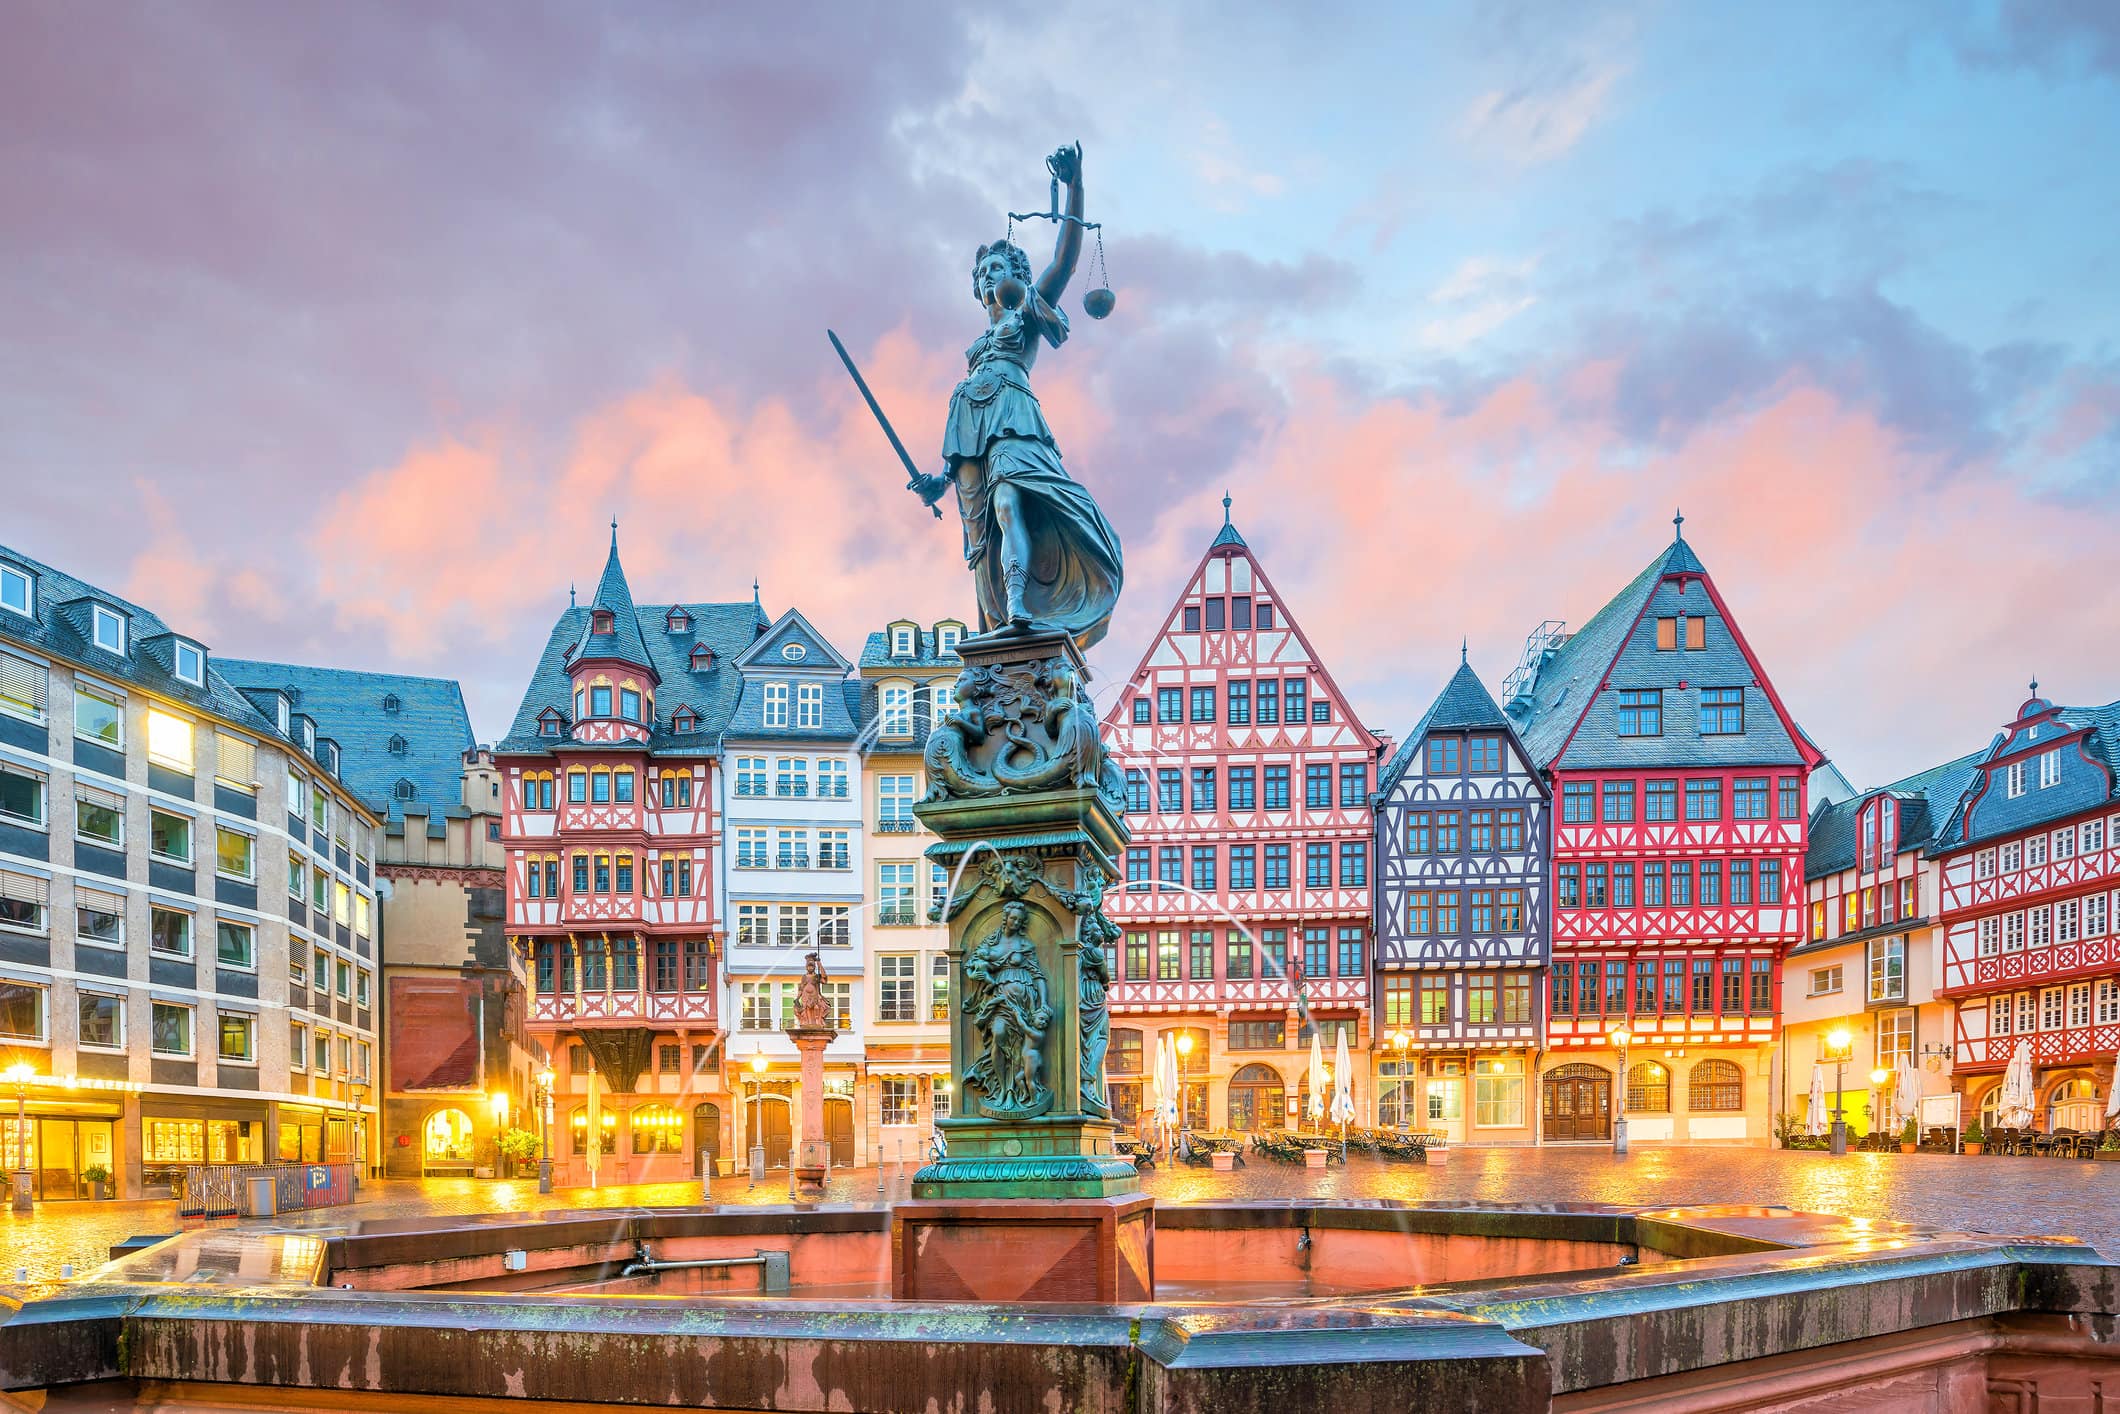 Romerberg alun-alun kota tua di Frankfurt, Jerman